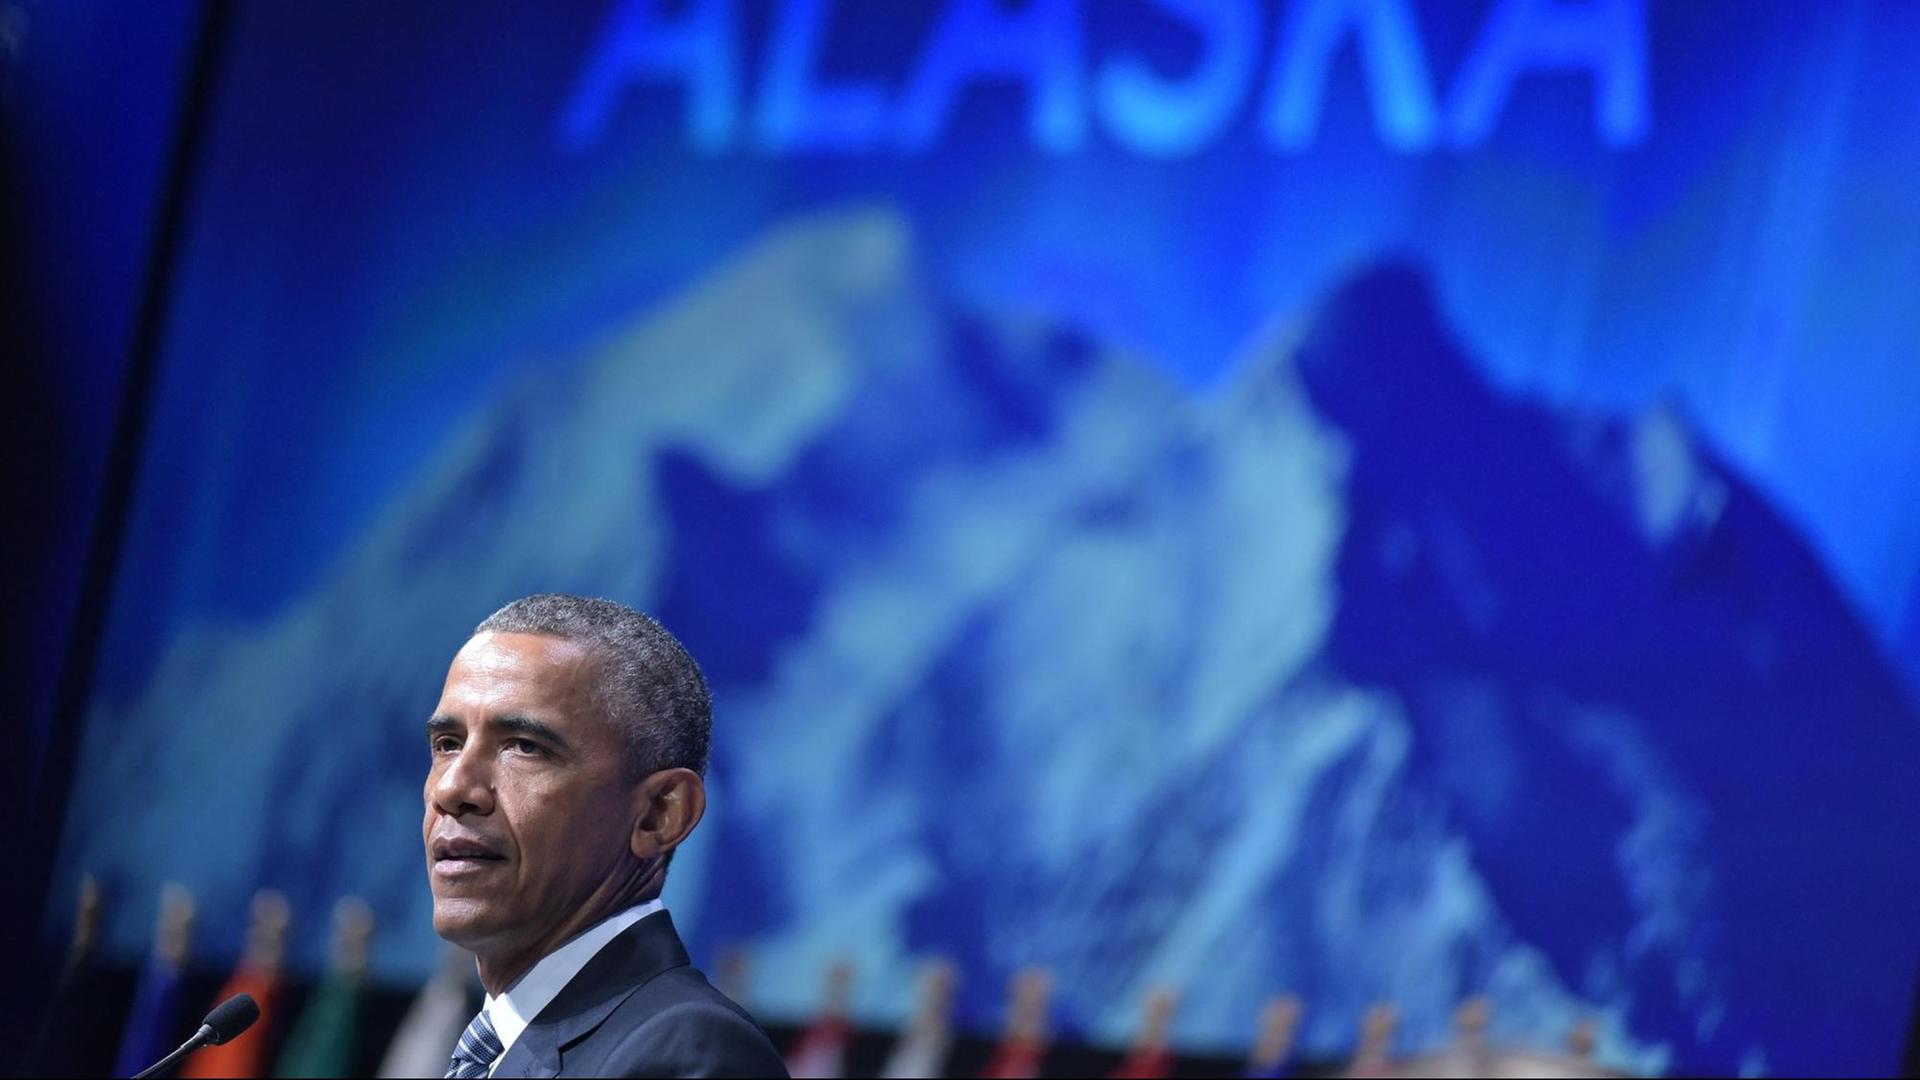 US-Präsident Barack Obama spricht vor einer blauen Wand, auf der Berggipfel zu sehen sind.